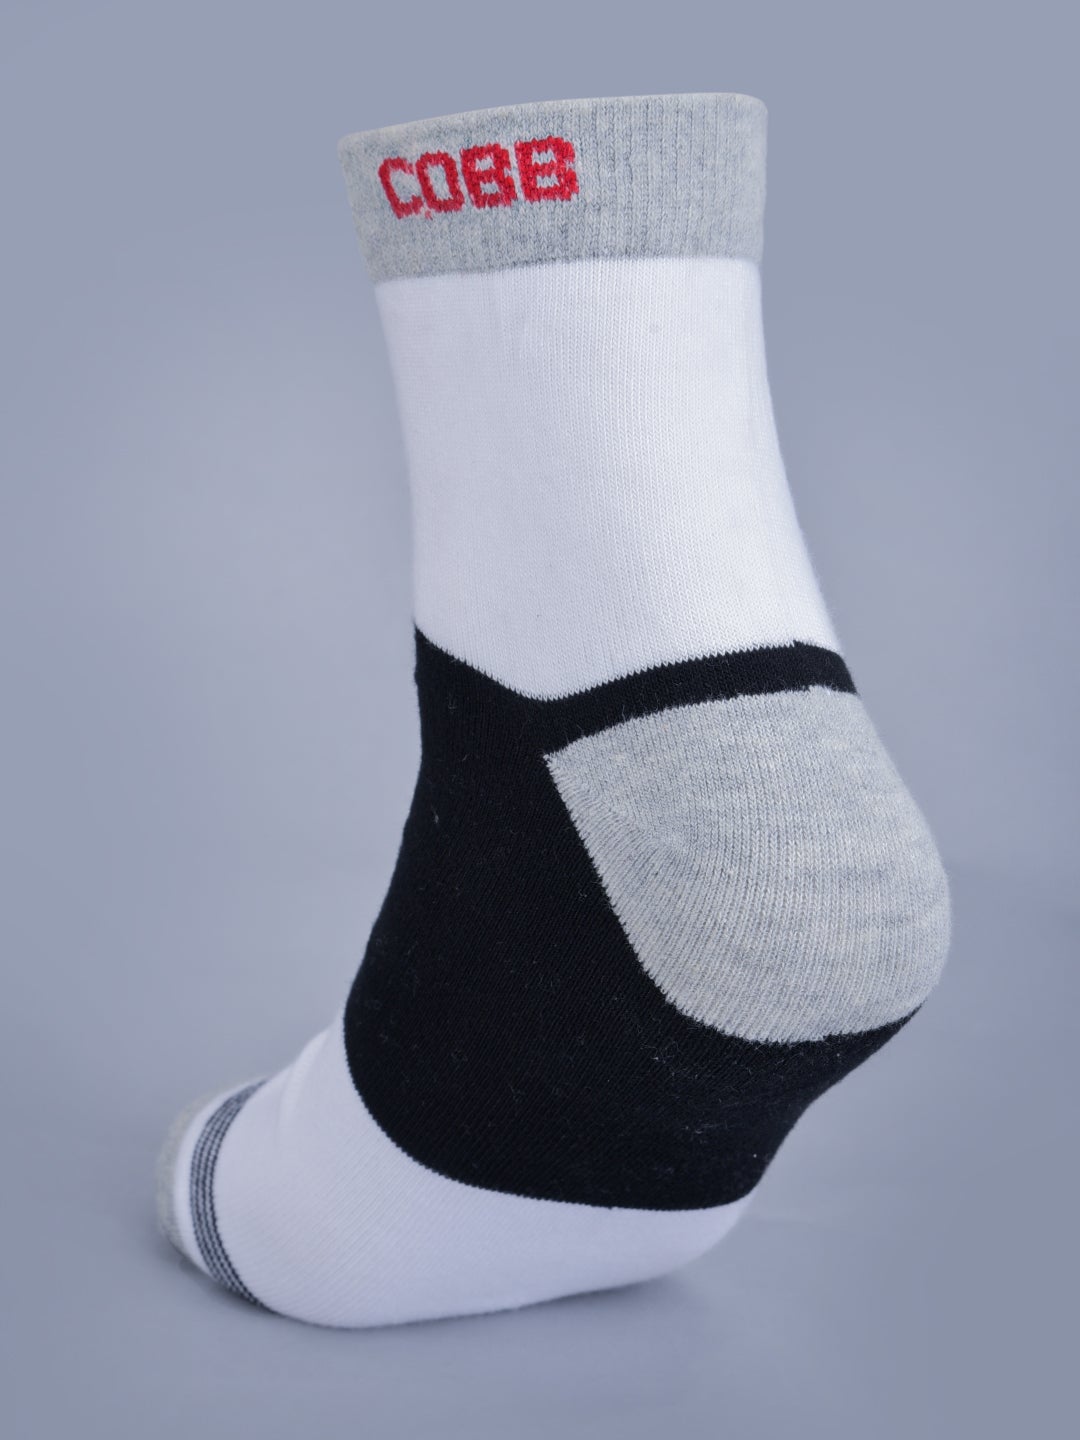 Cobb White Half Ankle Socks Black